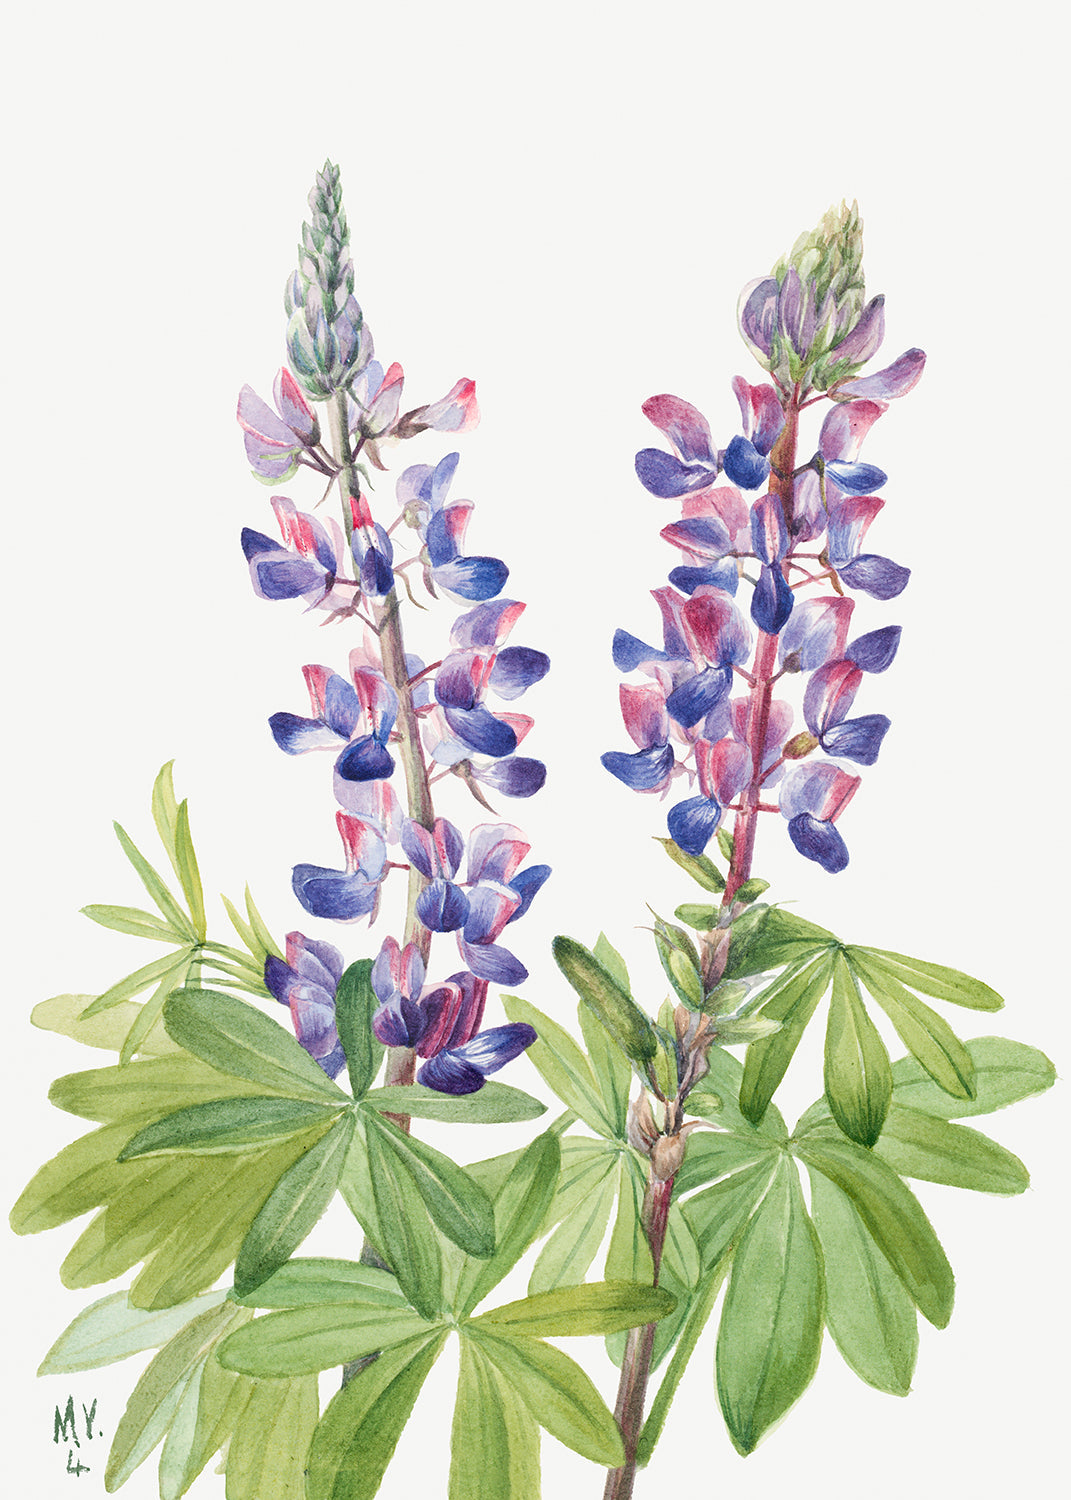 Botanical Plant Illustration - Lupine (Lupinus fornosus) by Mary Vaux Walcott